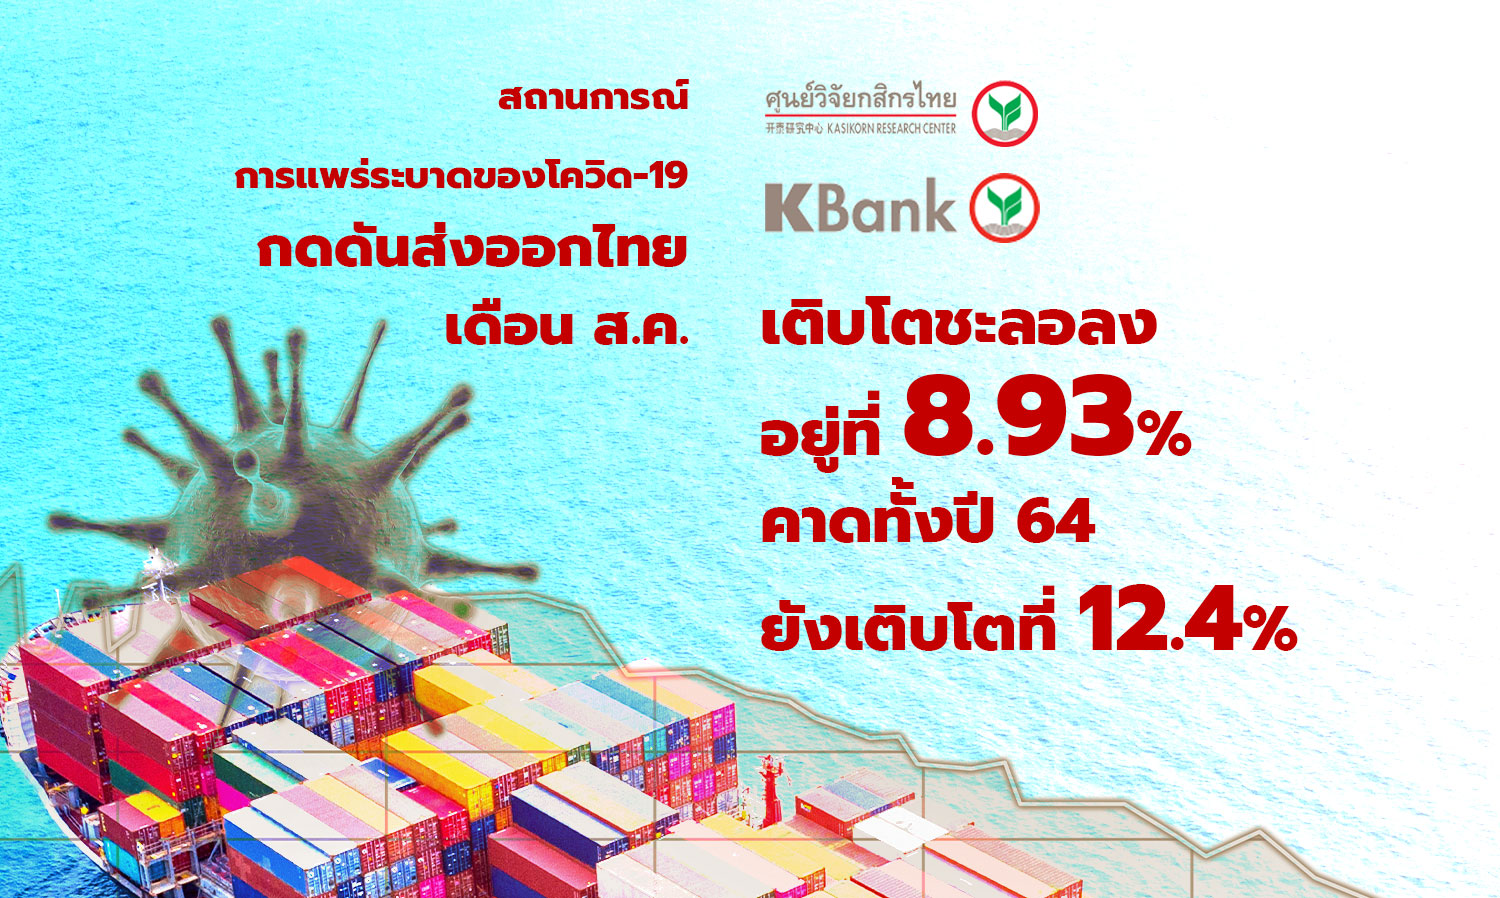 สถานการณ์การแพร่ระบาดของโควิด-19 กดดันส่งออกไทยเดือนส.ค.เติบโตชะลอลงอยู่ที่ 8.93% คาดทั้งปี 64 ยังเติบโตที่ 12.4% (ศูนย์วิจัยกสิกรไทย)